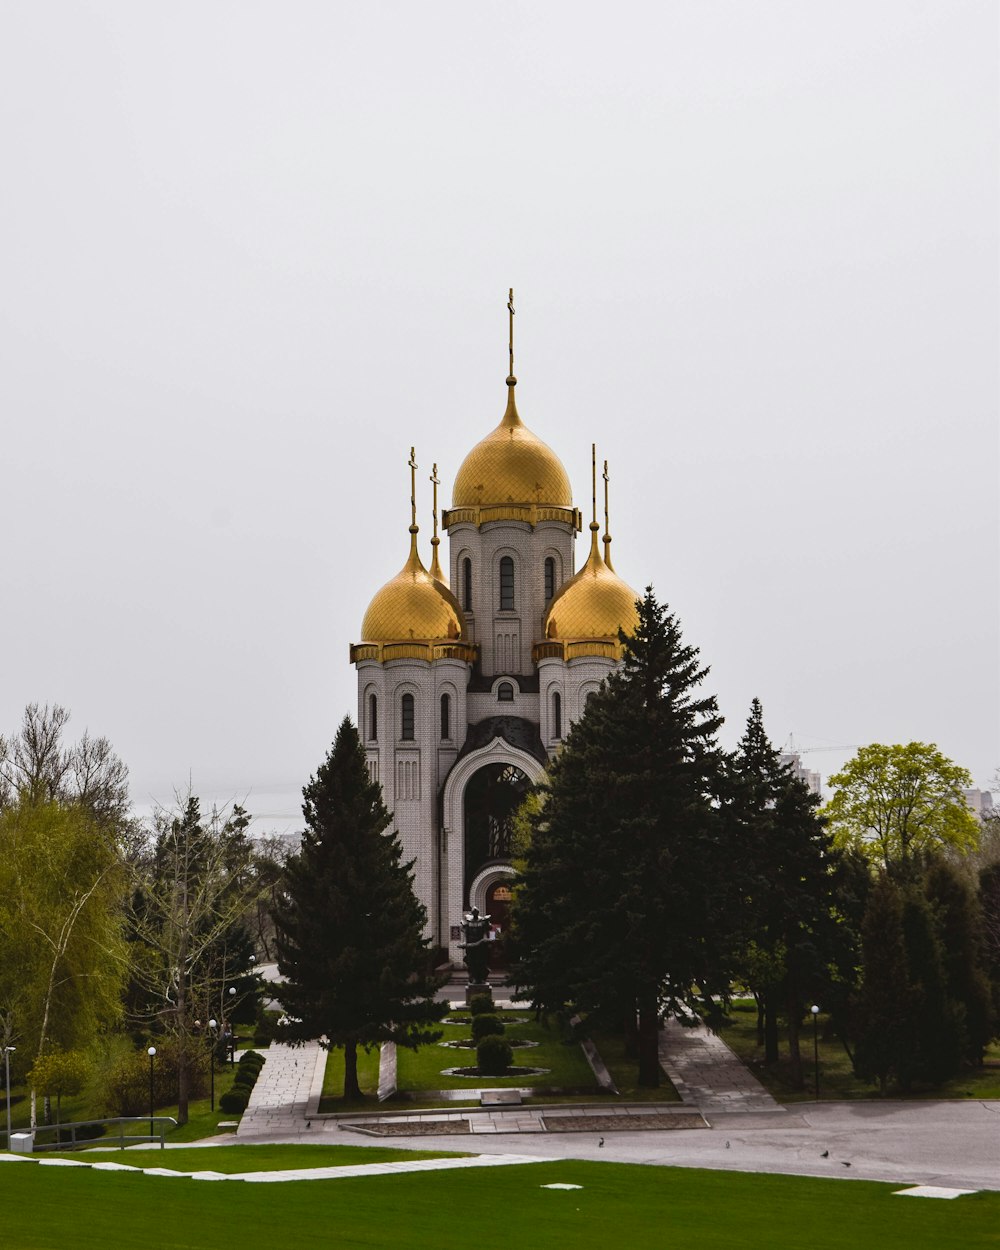 Ein großes weißes Gebäude mit goldenen Kuppeln darauf